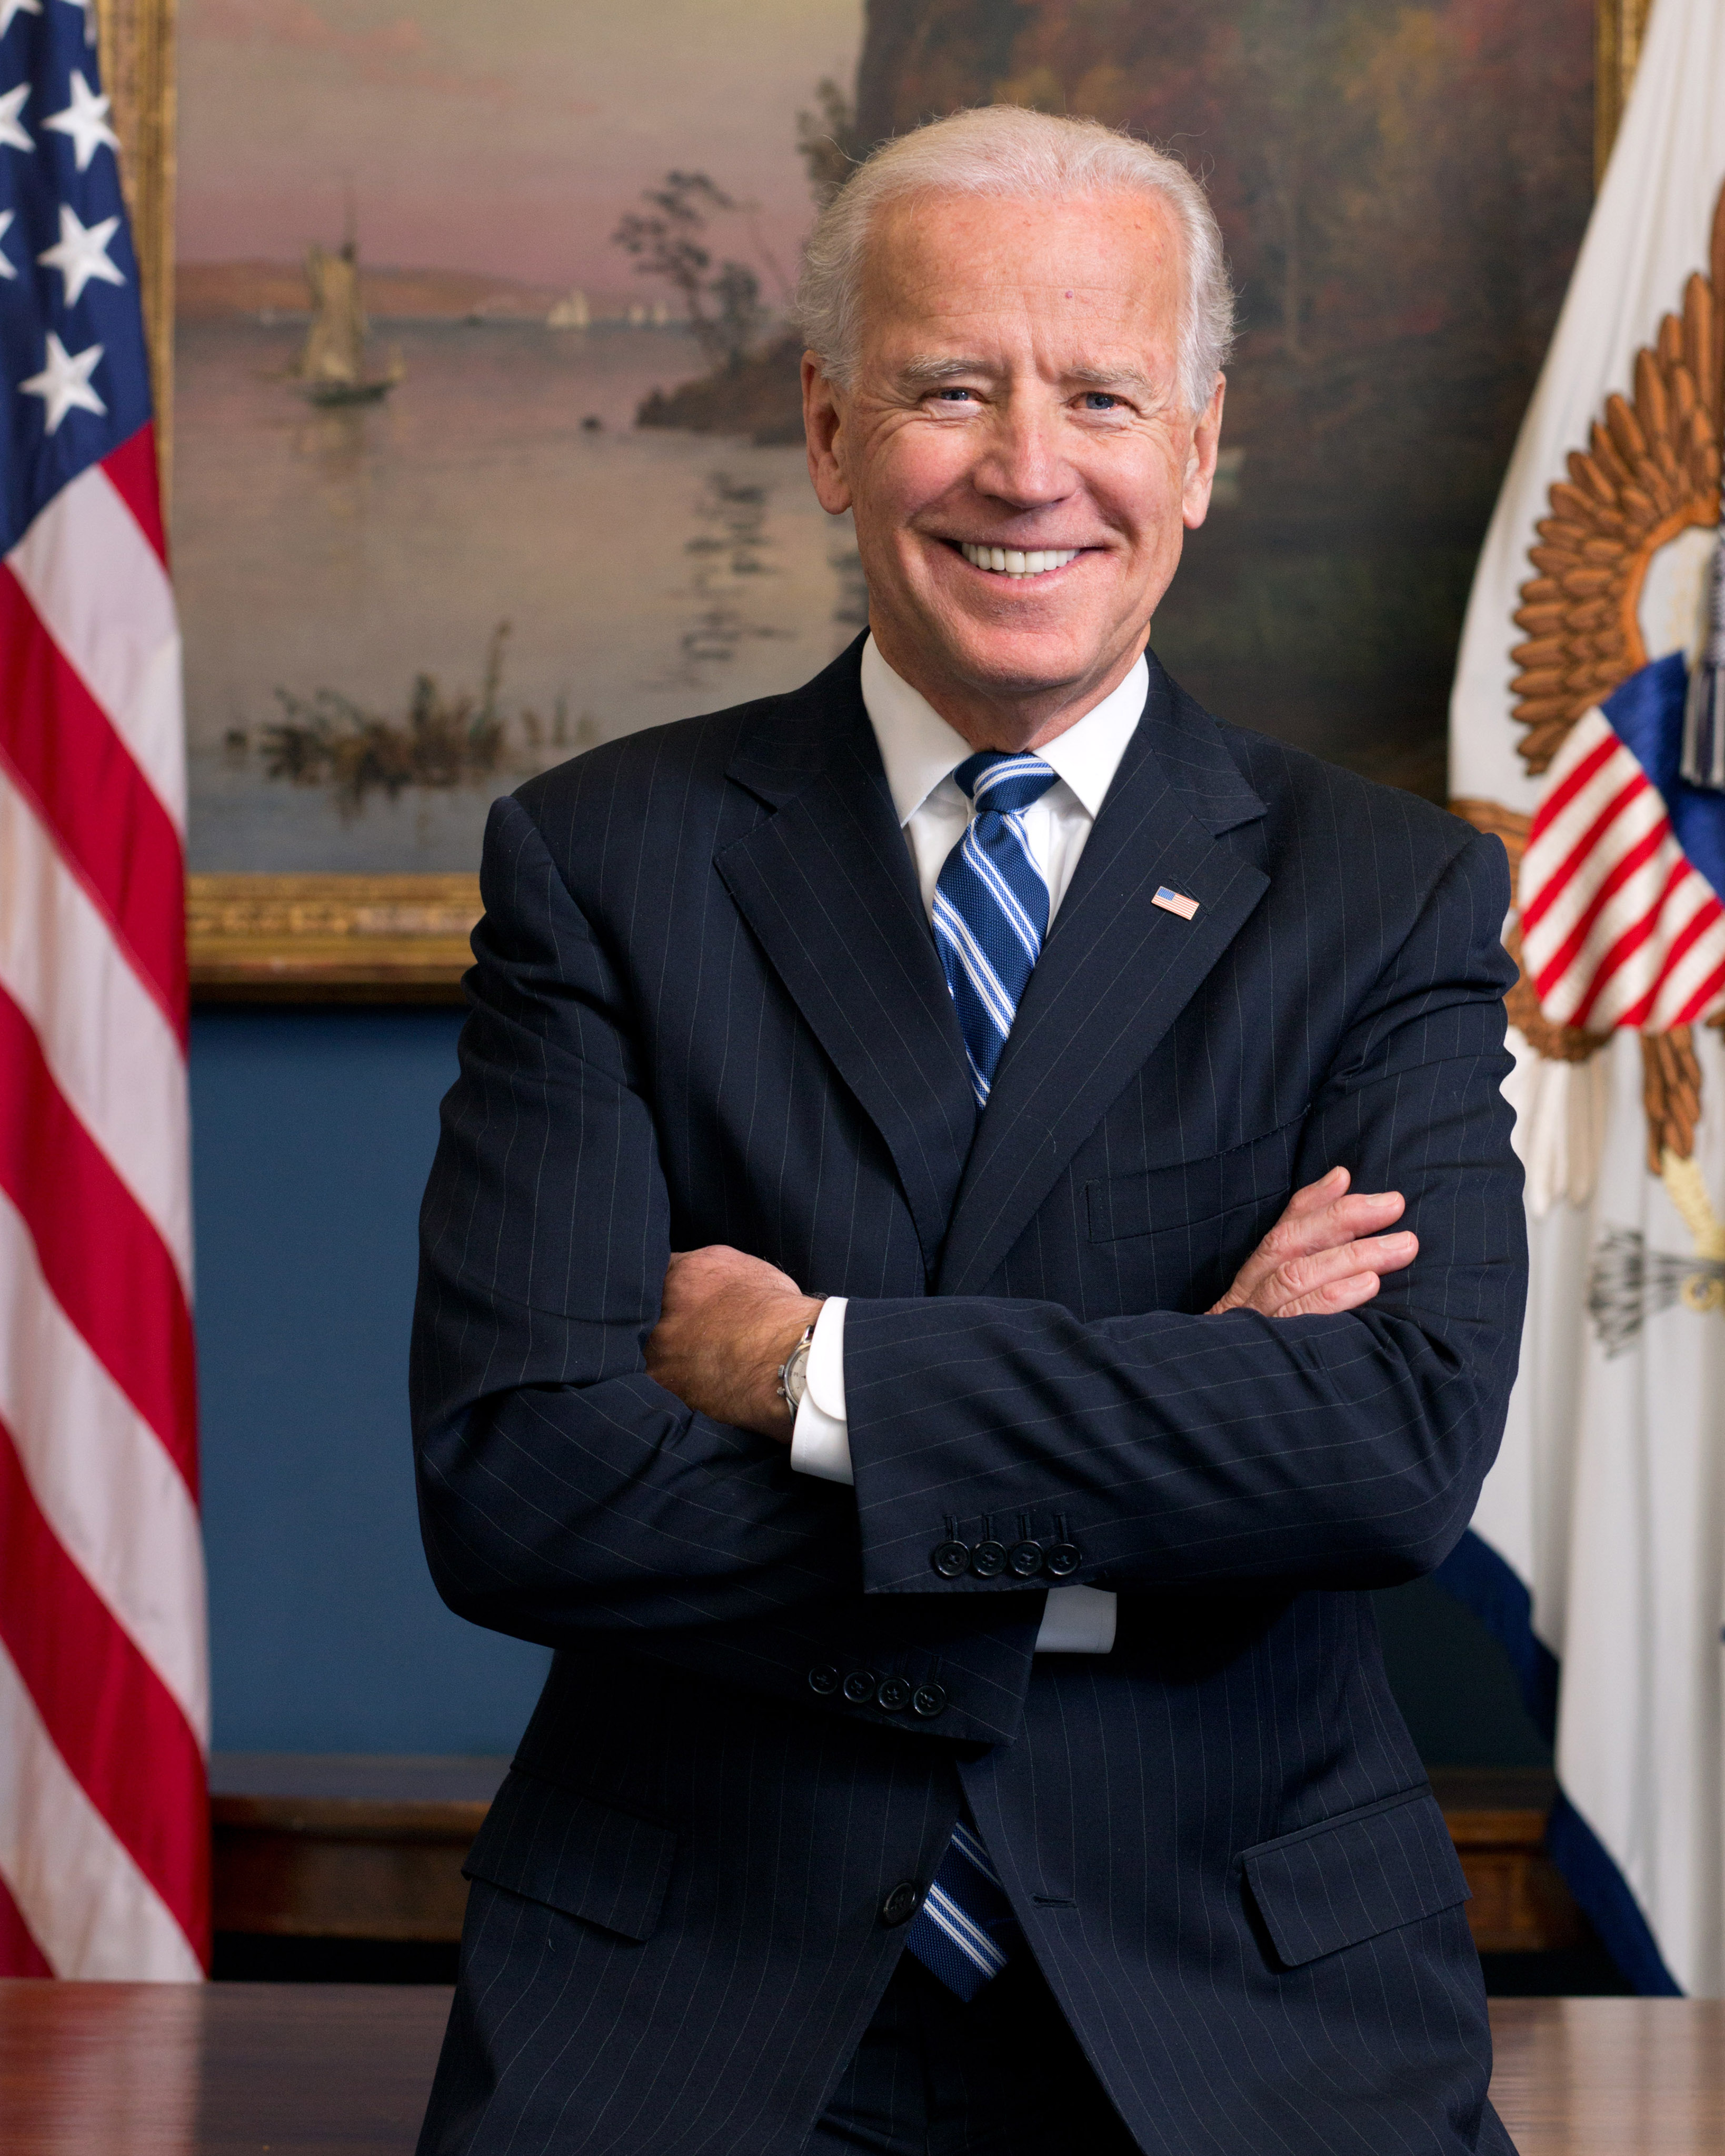 skildring Beliggenhed kontakt Vice President Joe Biden | The White House